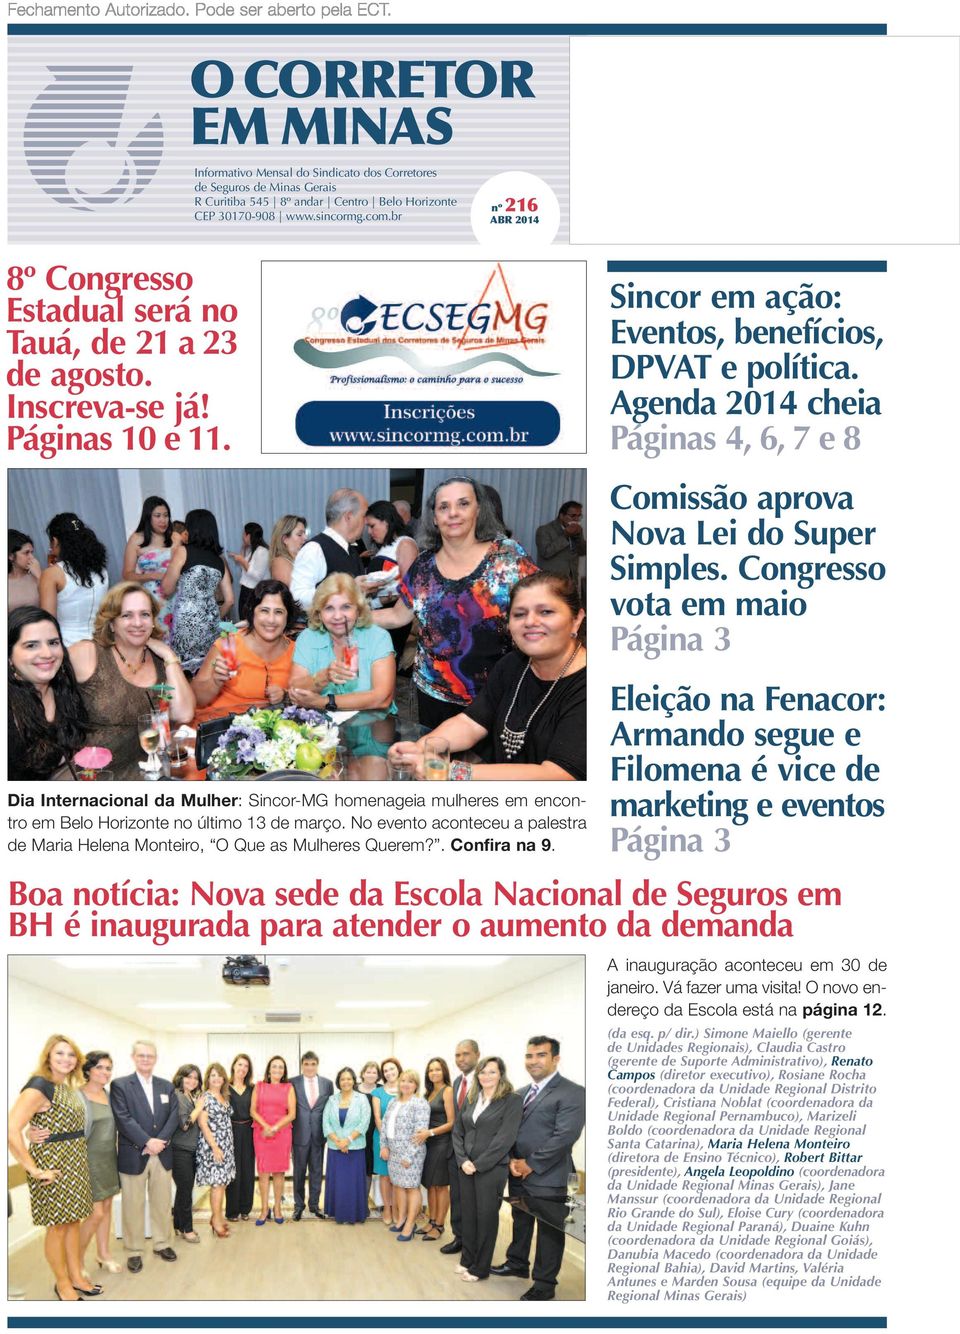 Agenda 2014 cheia Páginas 4, 6, 7 e 8 Dia Internacional da Mulher: Sincor-MG homenageia mulheres em encontro em Belo Horizonte no último 13 de março.